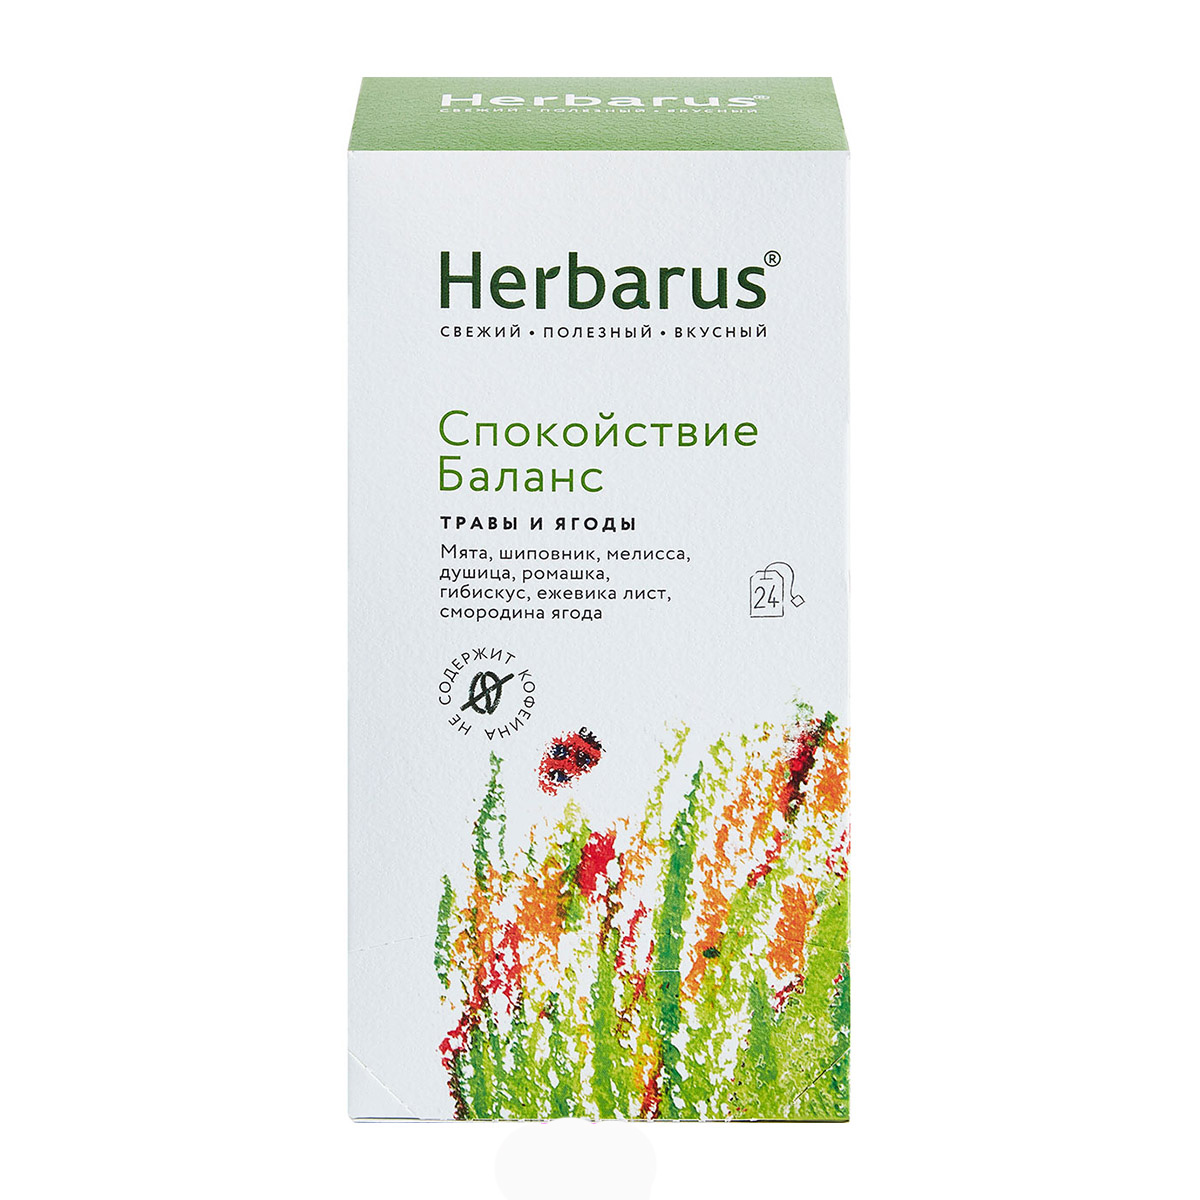 Herbarus Чайный напиток Спокойствие и баланс, 24 шт х 1,8 г (Herbarus, Травы и ягоды) чайный напиток herbarus имбирная энергия 24 пакетика